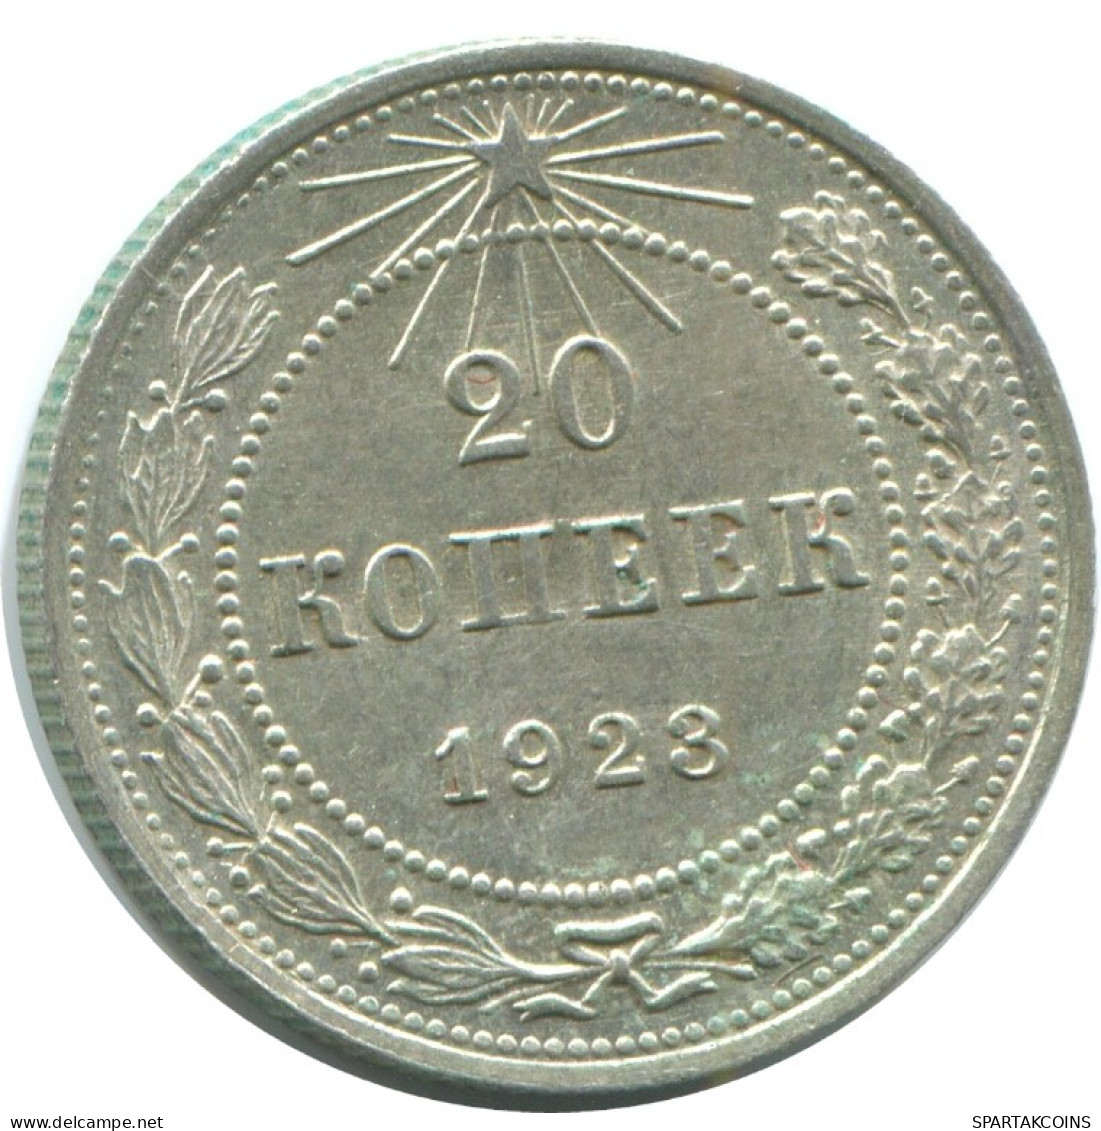 20 KOPEKS 1923 RUSSLAND RUSSIA RSFSR SILBER Münze HIGH GRADE #AF462.4.D.A - Russia